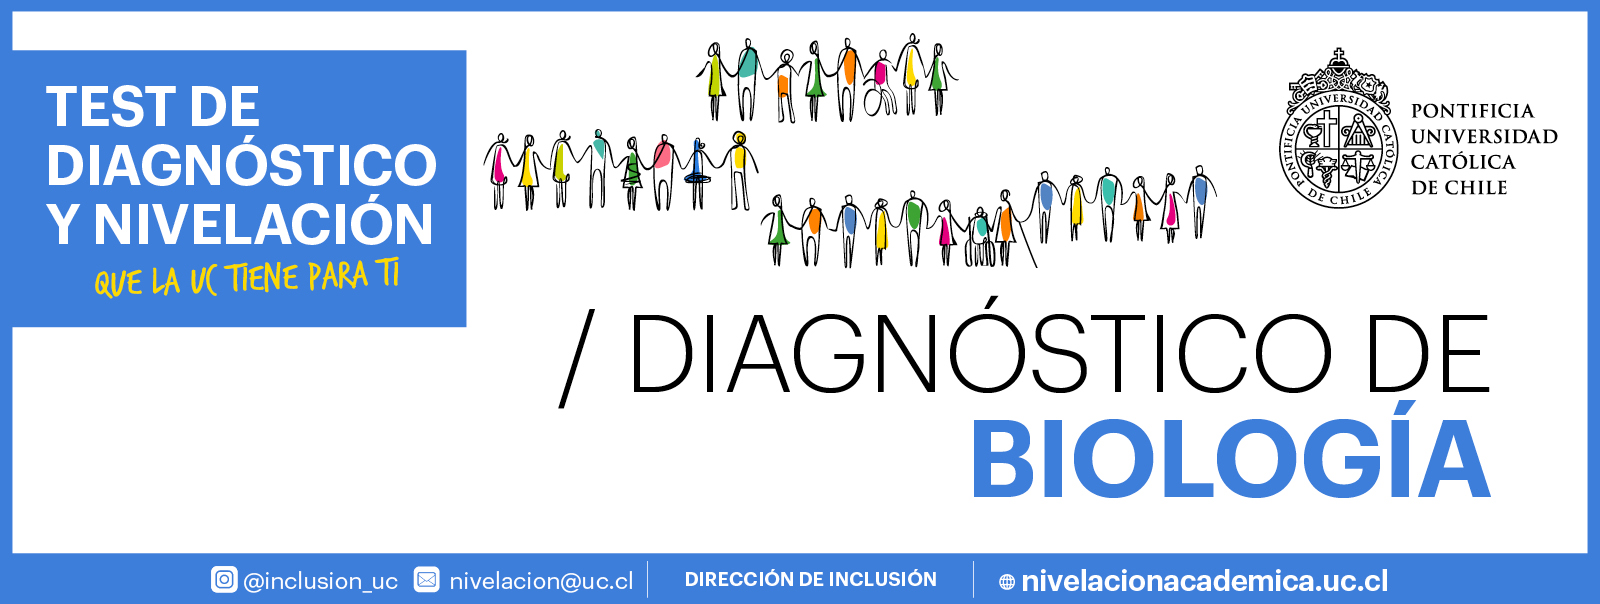 Banner gráfico con título: "Diagnóstico de Biología"